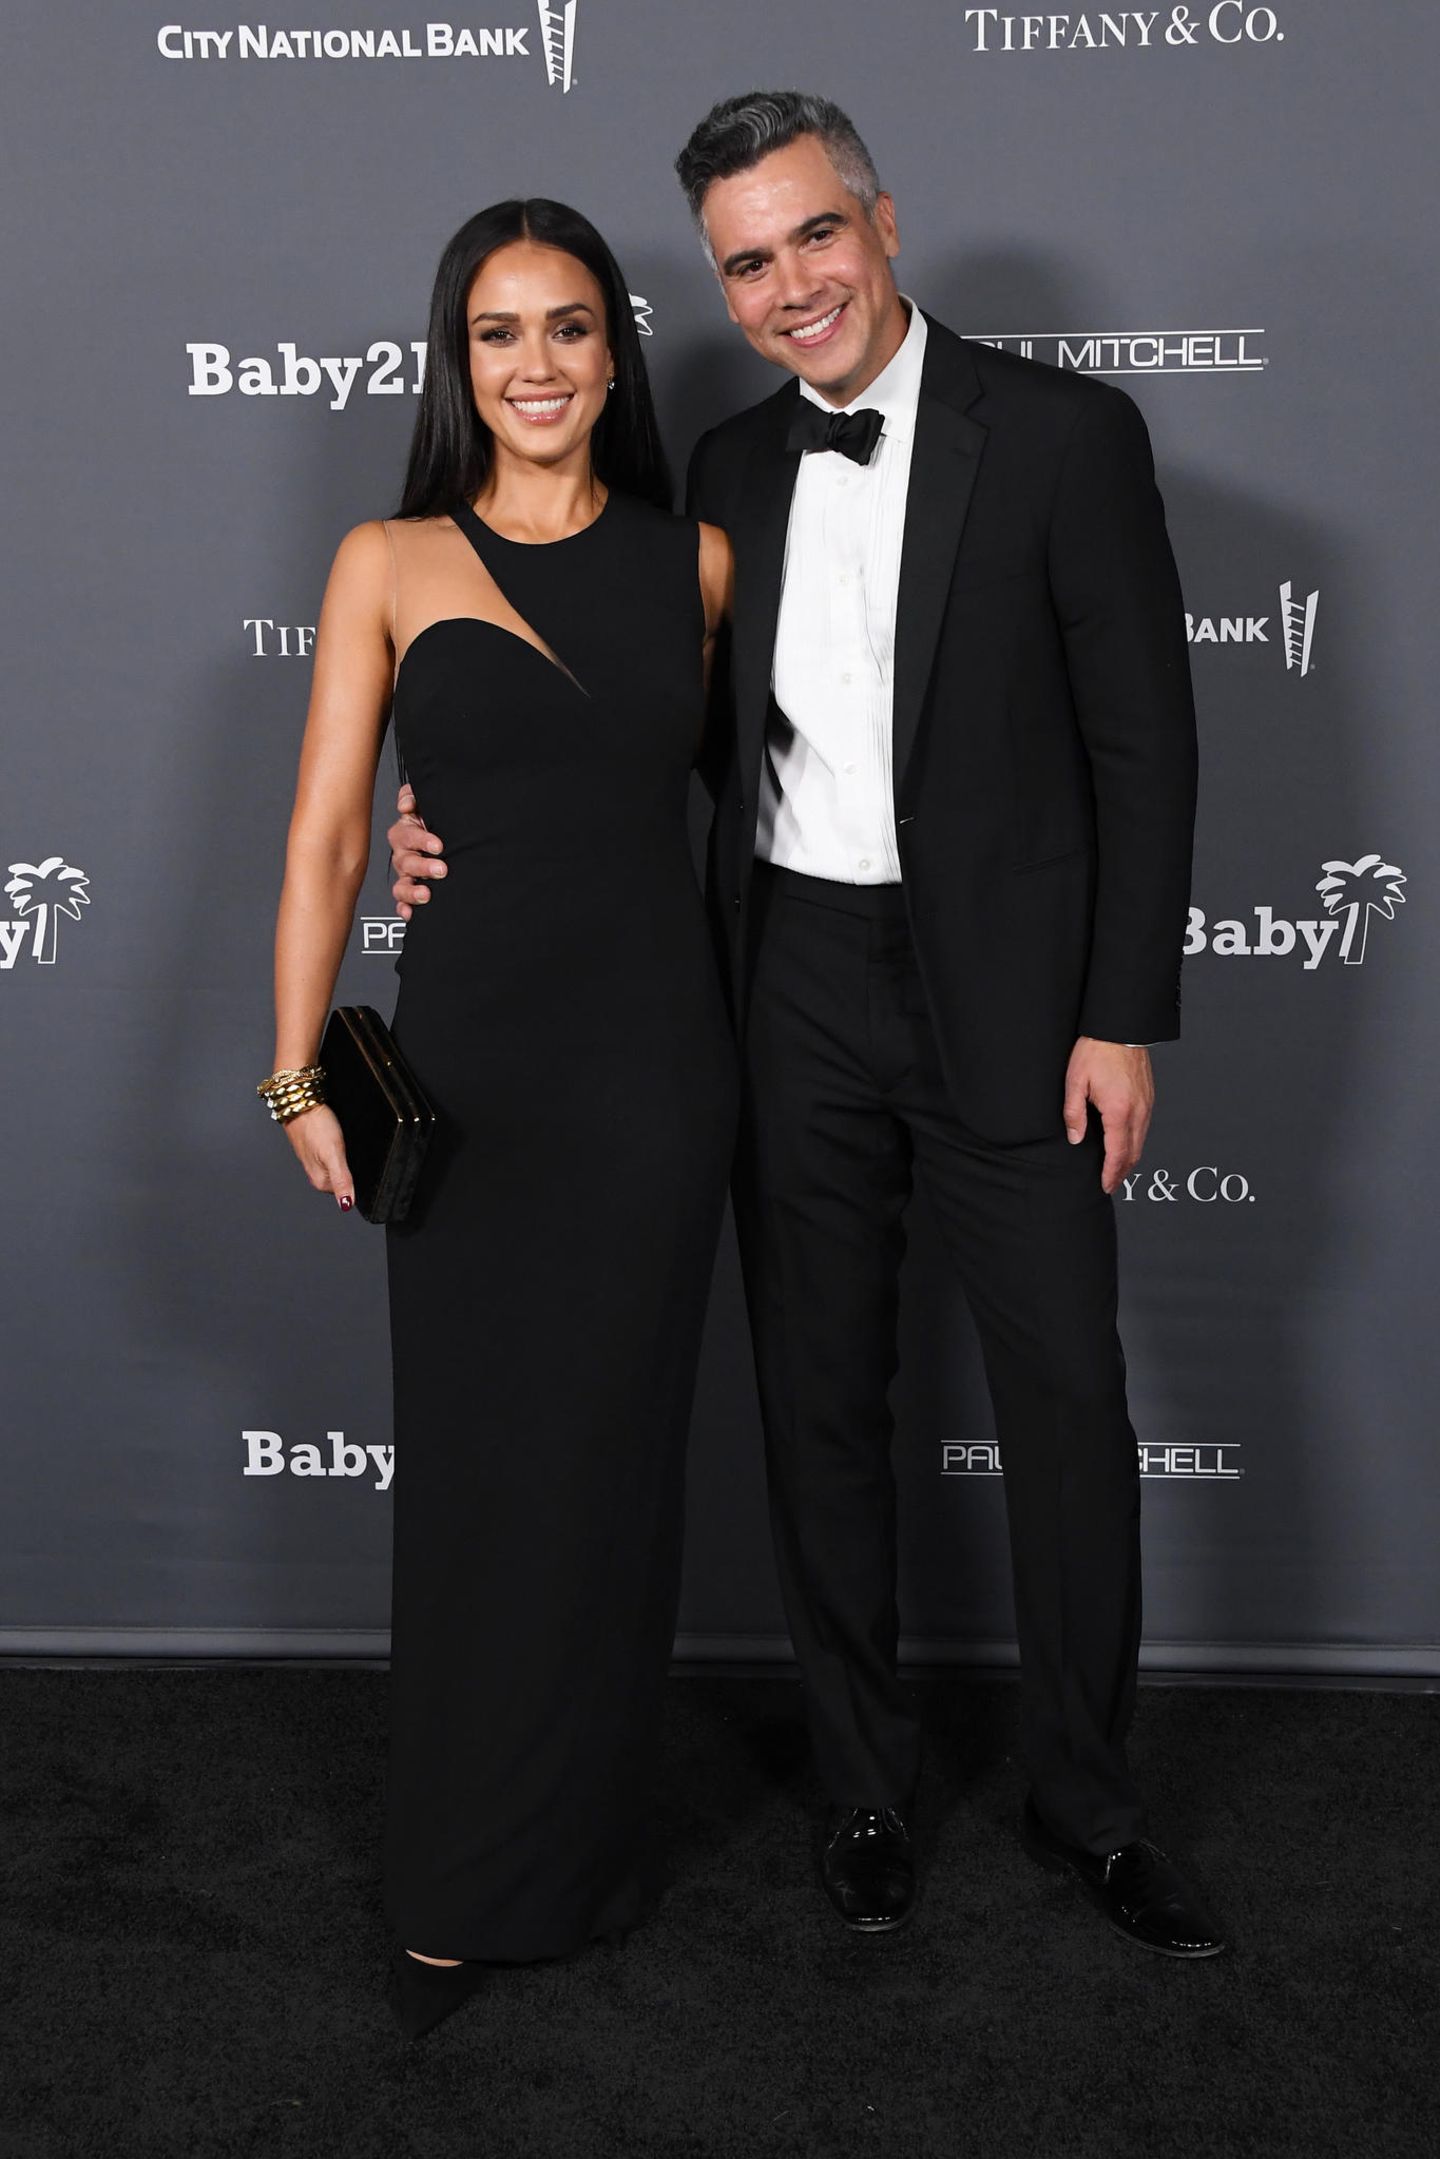 Klassisch, elegant und doch ein Hingucker: Jessica Alba zeigt sich mit Ehemann Cash Warren an ihrer Seite im stylischen One-Shoulder-Dress in Schwarz.